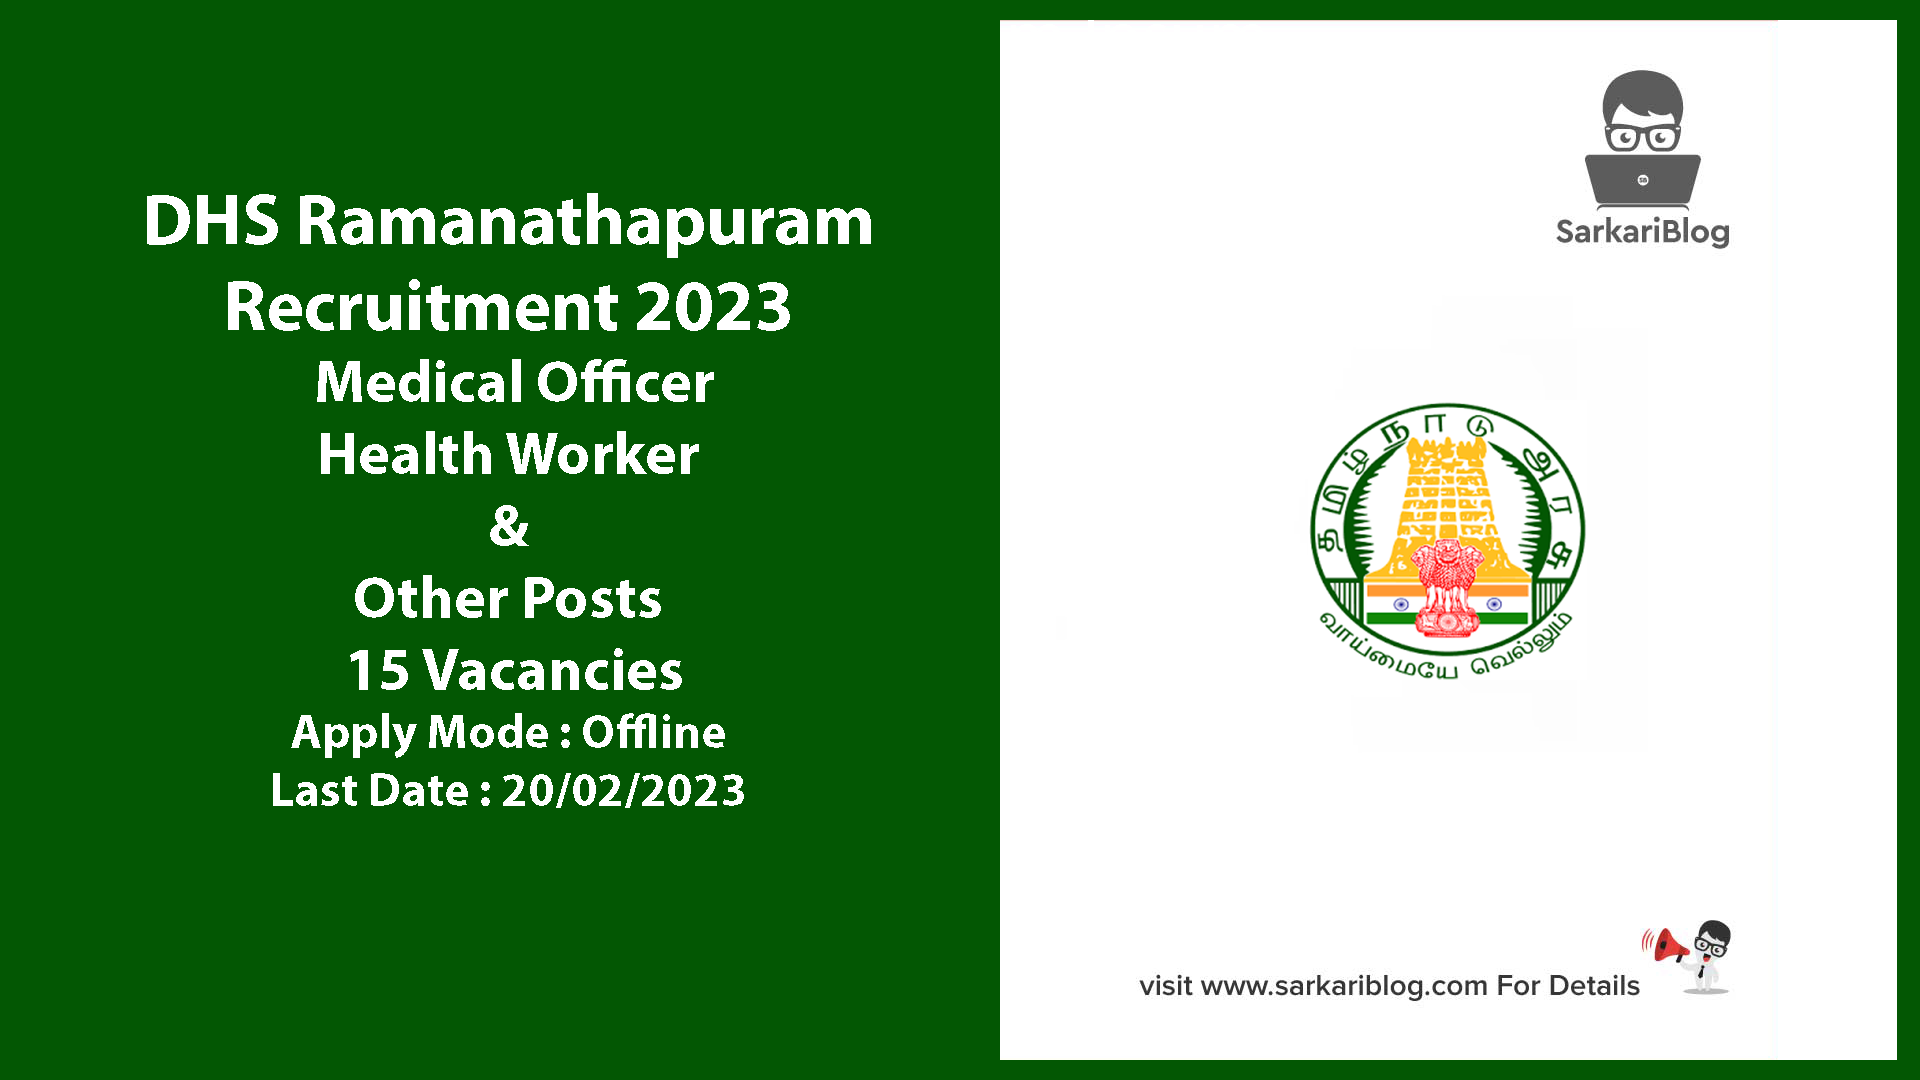 DHS Ramanathapuram Recruitment 2023